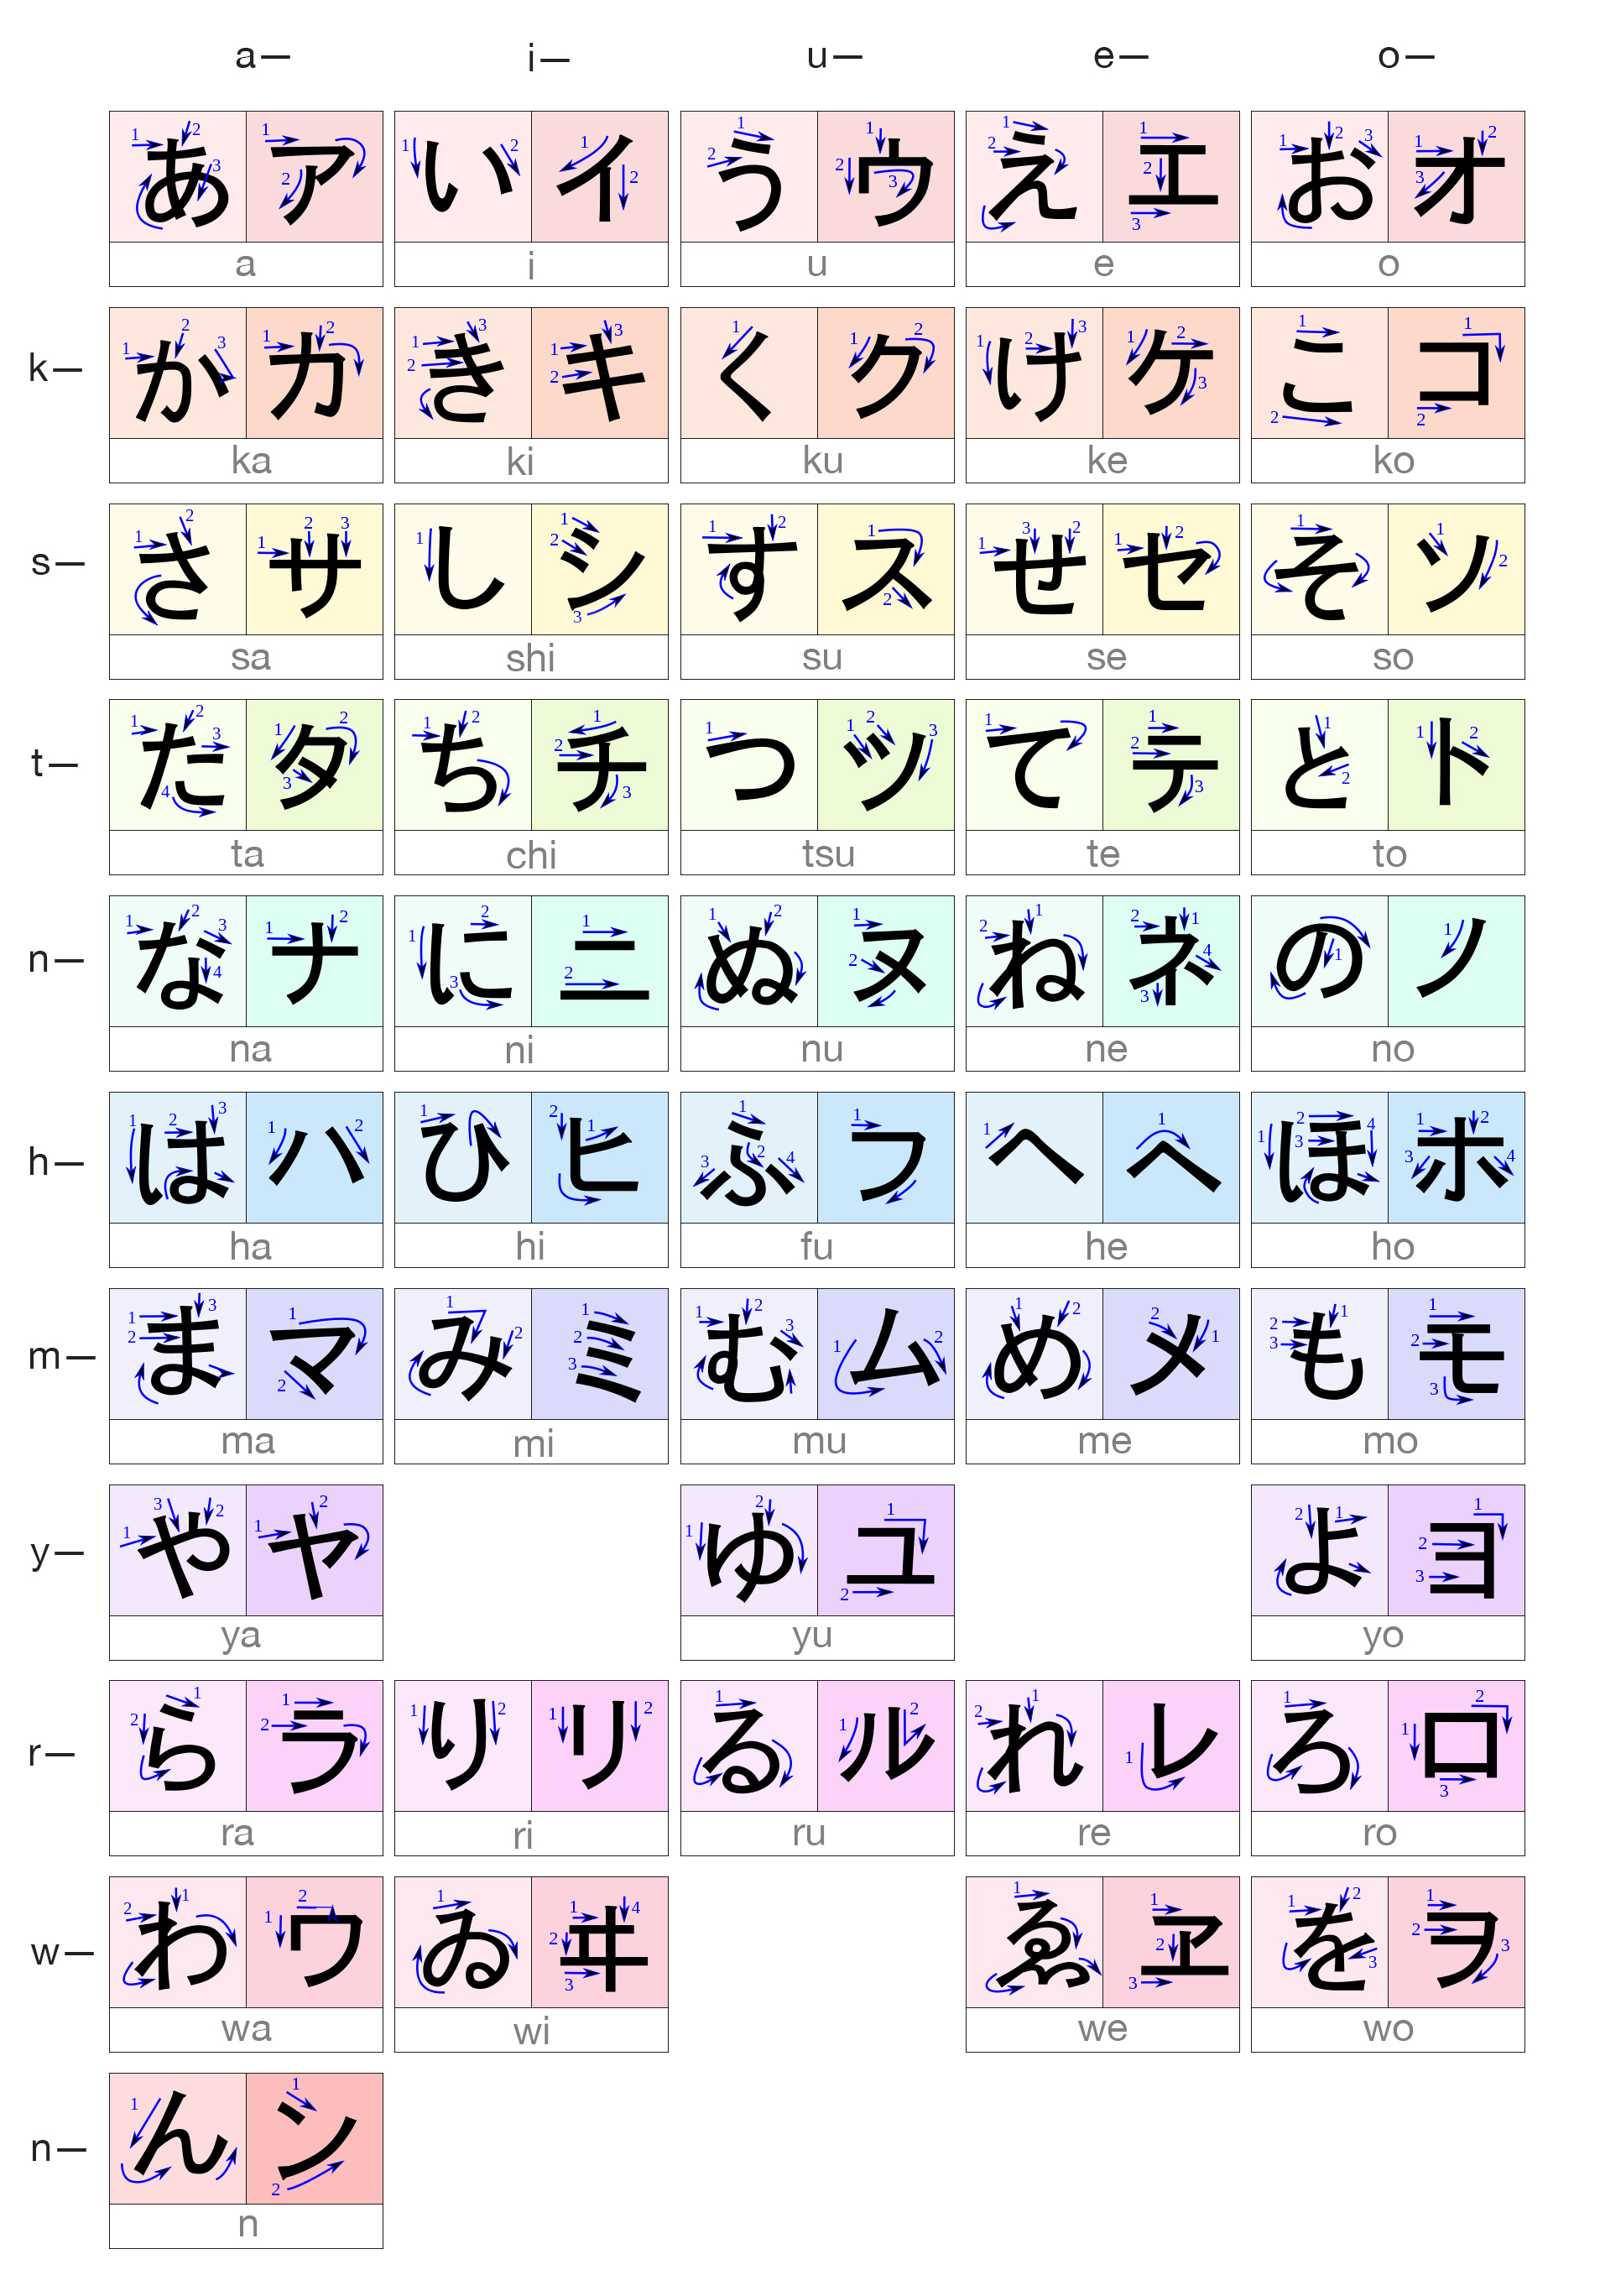 Hướng dẫn viết chữ Katakana